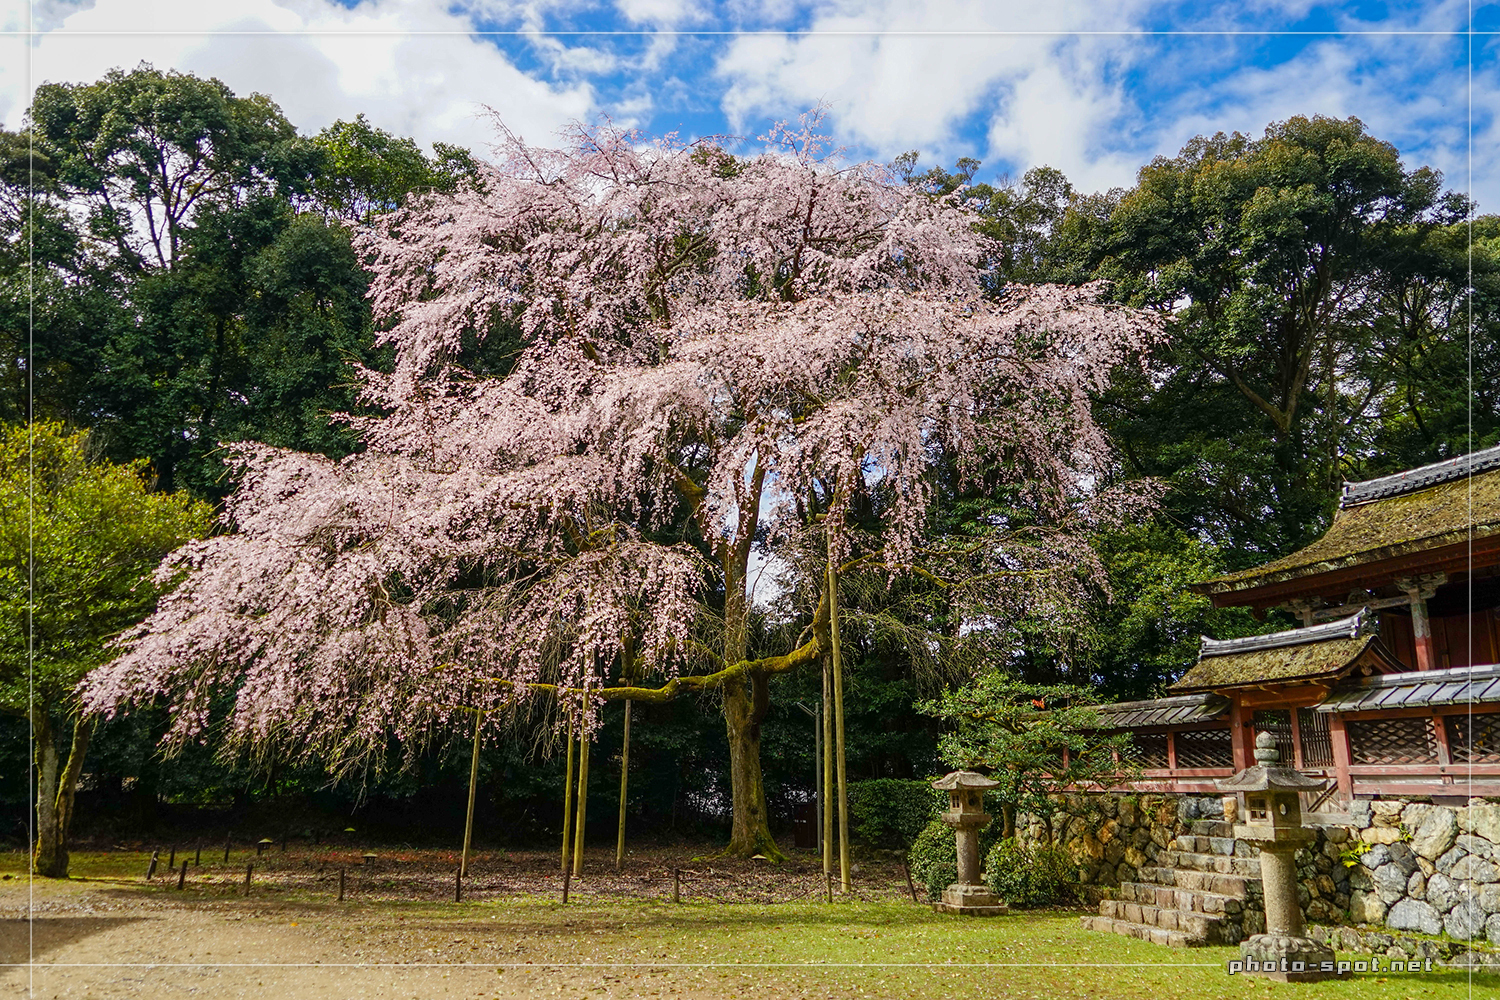 醍醐寺 伽藍 清瀧宮の前に咲く立派な桜